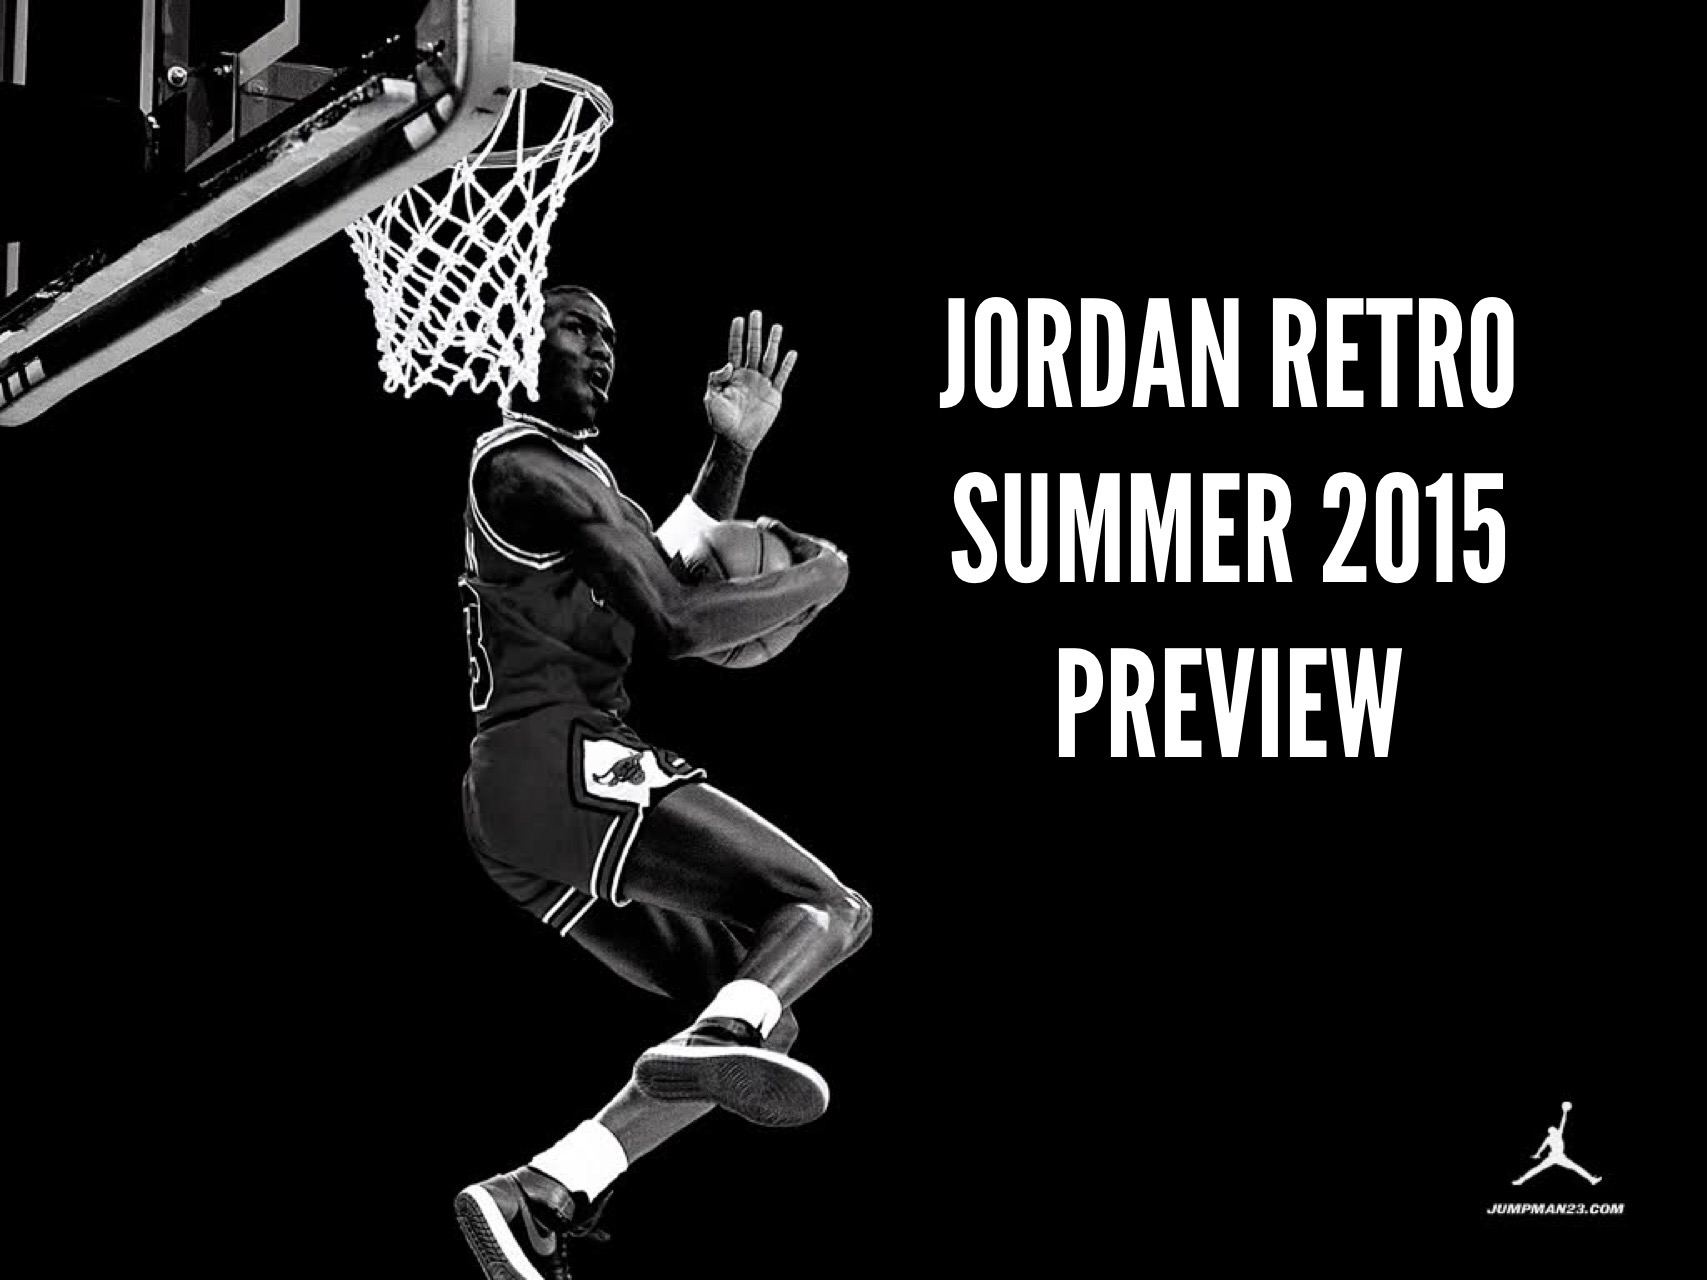 Air Jordan Retro Summer 2015 Preview